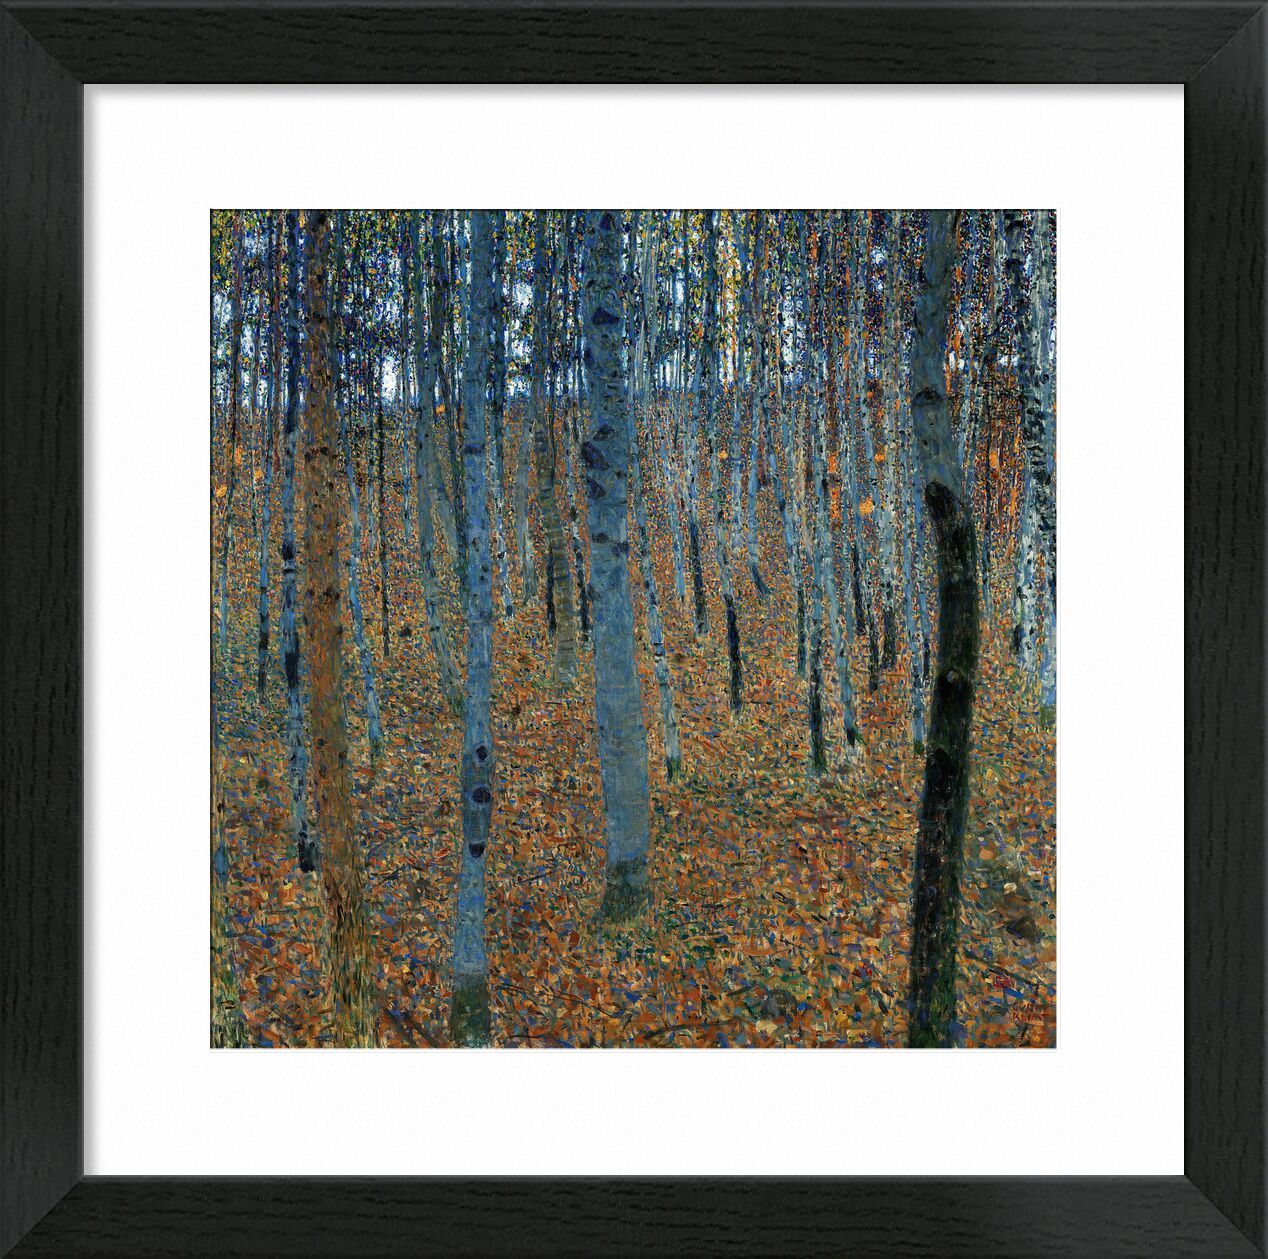 Beech Forest - Gustav Klimt von Bildende Kunst, Prodi Art, Wald, Herbst, Blätter, Bäume, KLIMT, Jugendstil, Birke